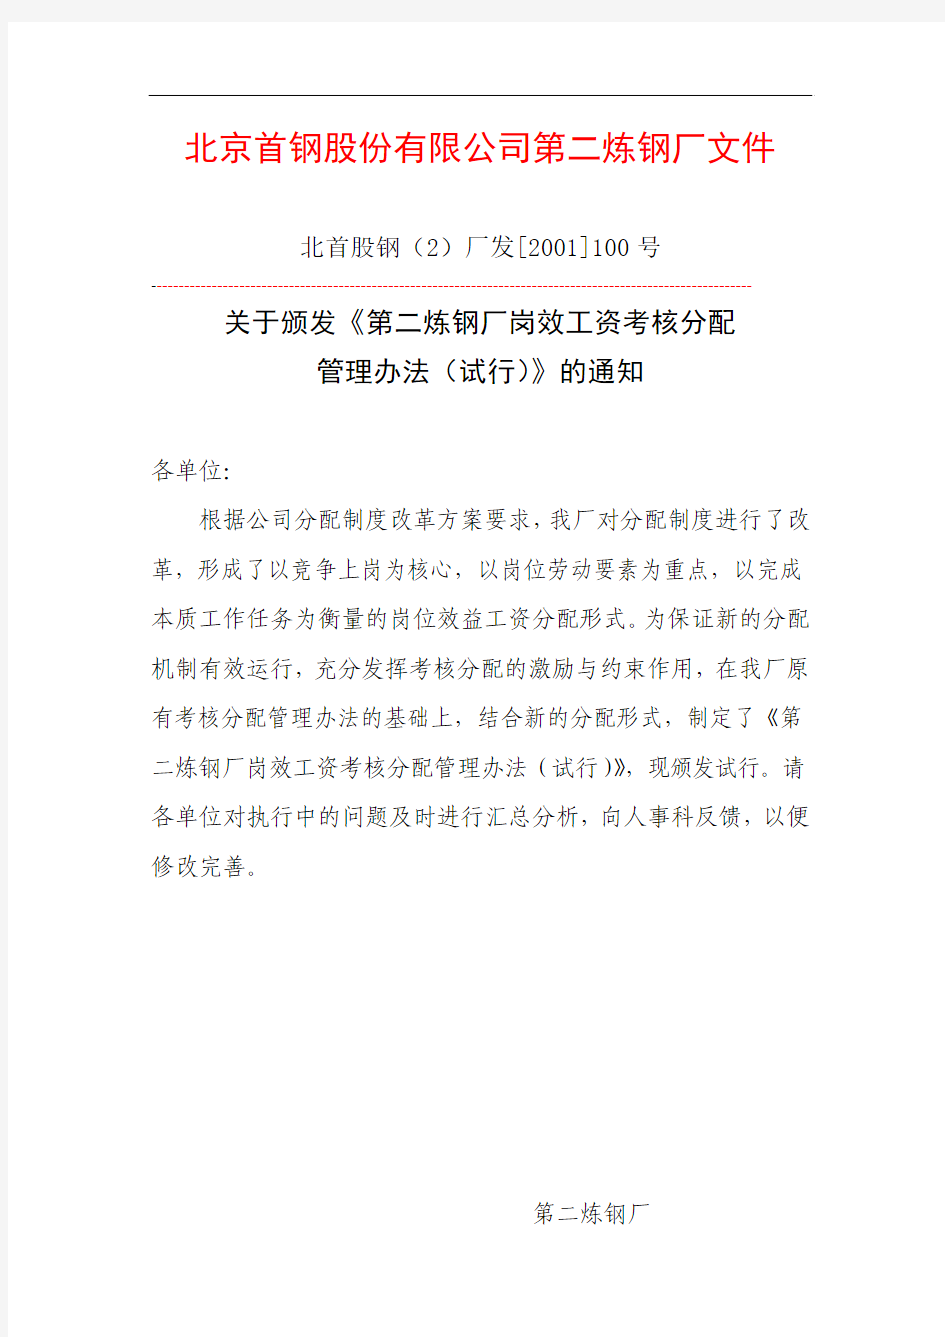 北京首钢股份有限公司第二炼钢厂文件